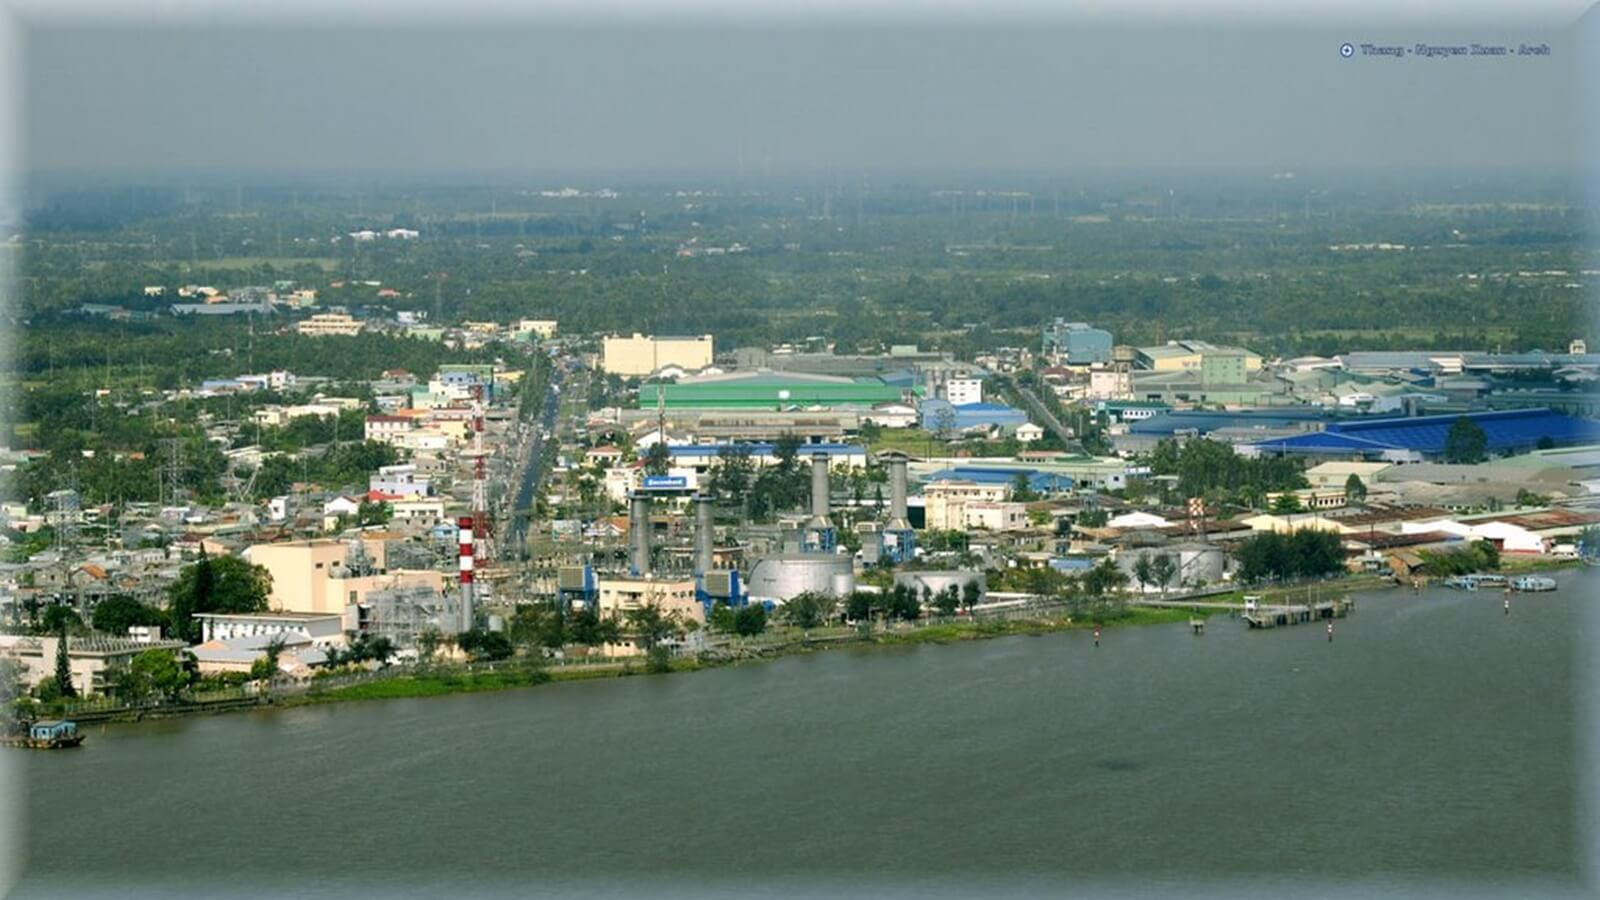 Khu công nghiệp Trà Nóc (Cần Thơ) là 1 trong 3 mô hình khu công nghiệp sinh thái đầu tiên tại Việt Nam được thành lập năm 2015